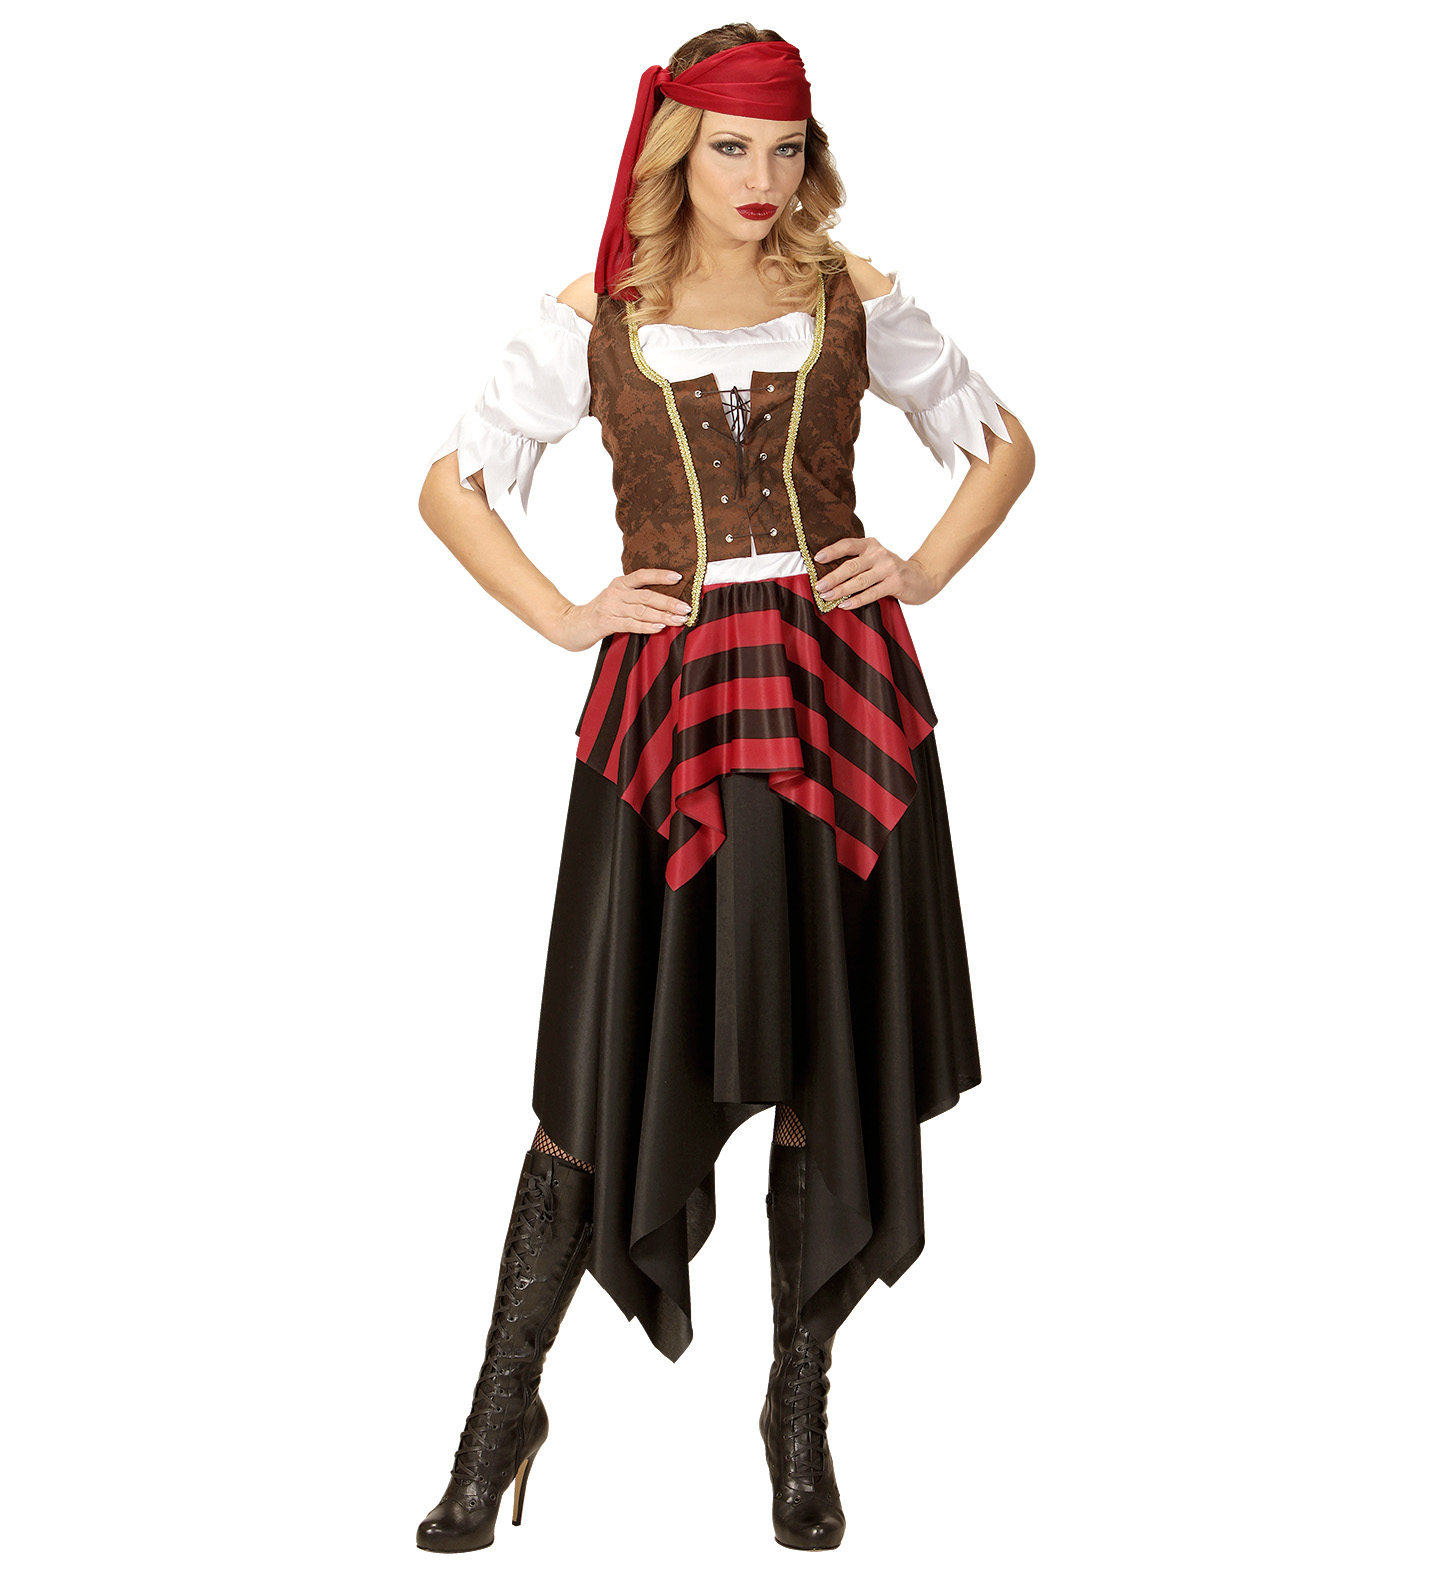 Kinder Piratin Kostüm Piratinkostüm Piratinnen Kleid Mädchen Outfit S 128 cm 